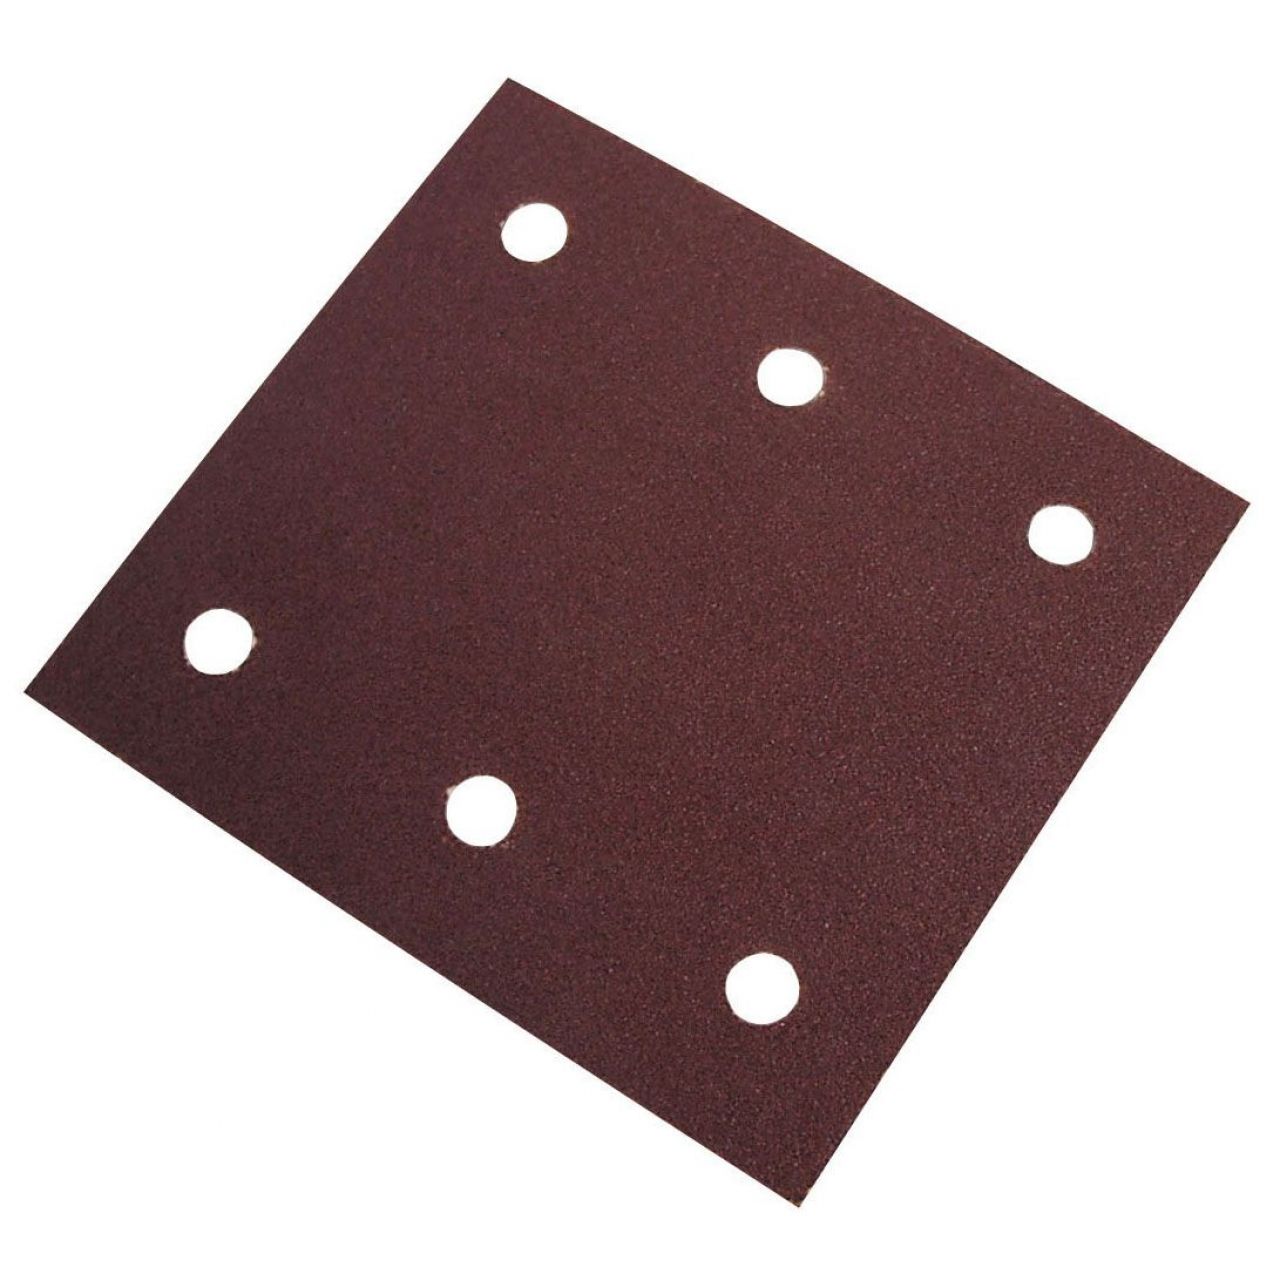 Caja de 50 hojas de 80x133 mm rectangulares de papel abrasivo A/O autoadherente (grano 40)